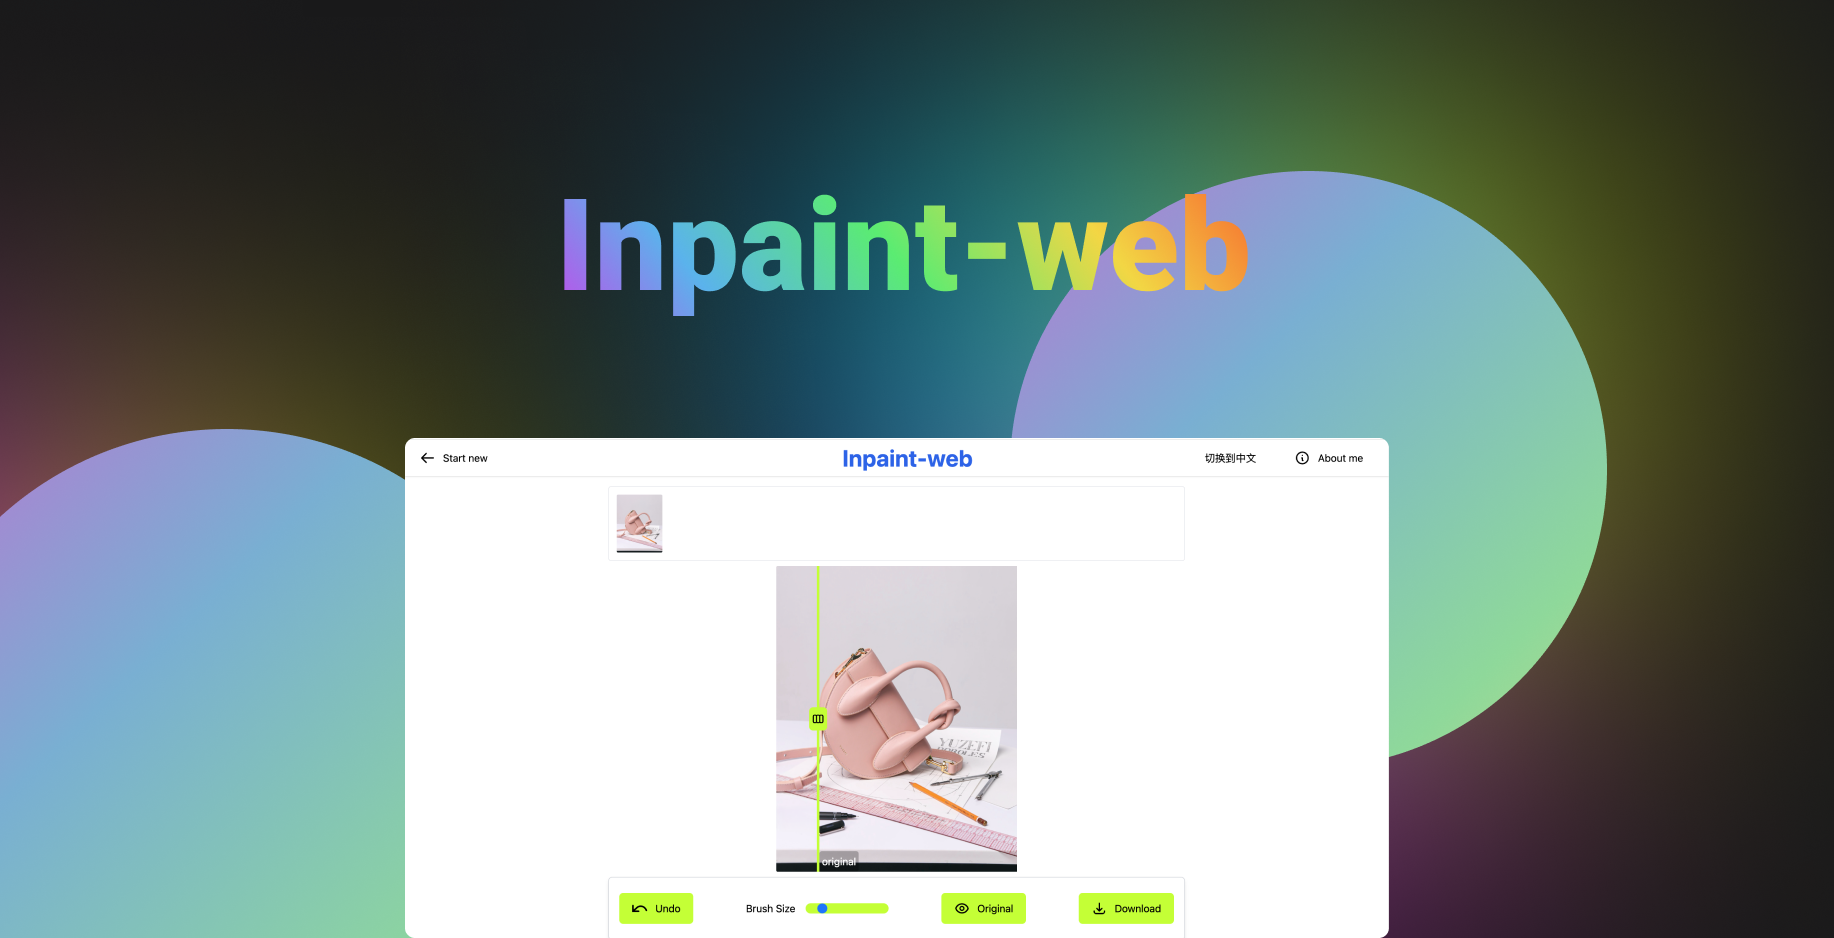 Inpaint-web